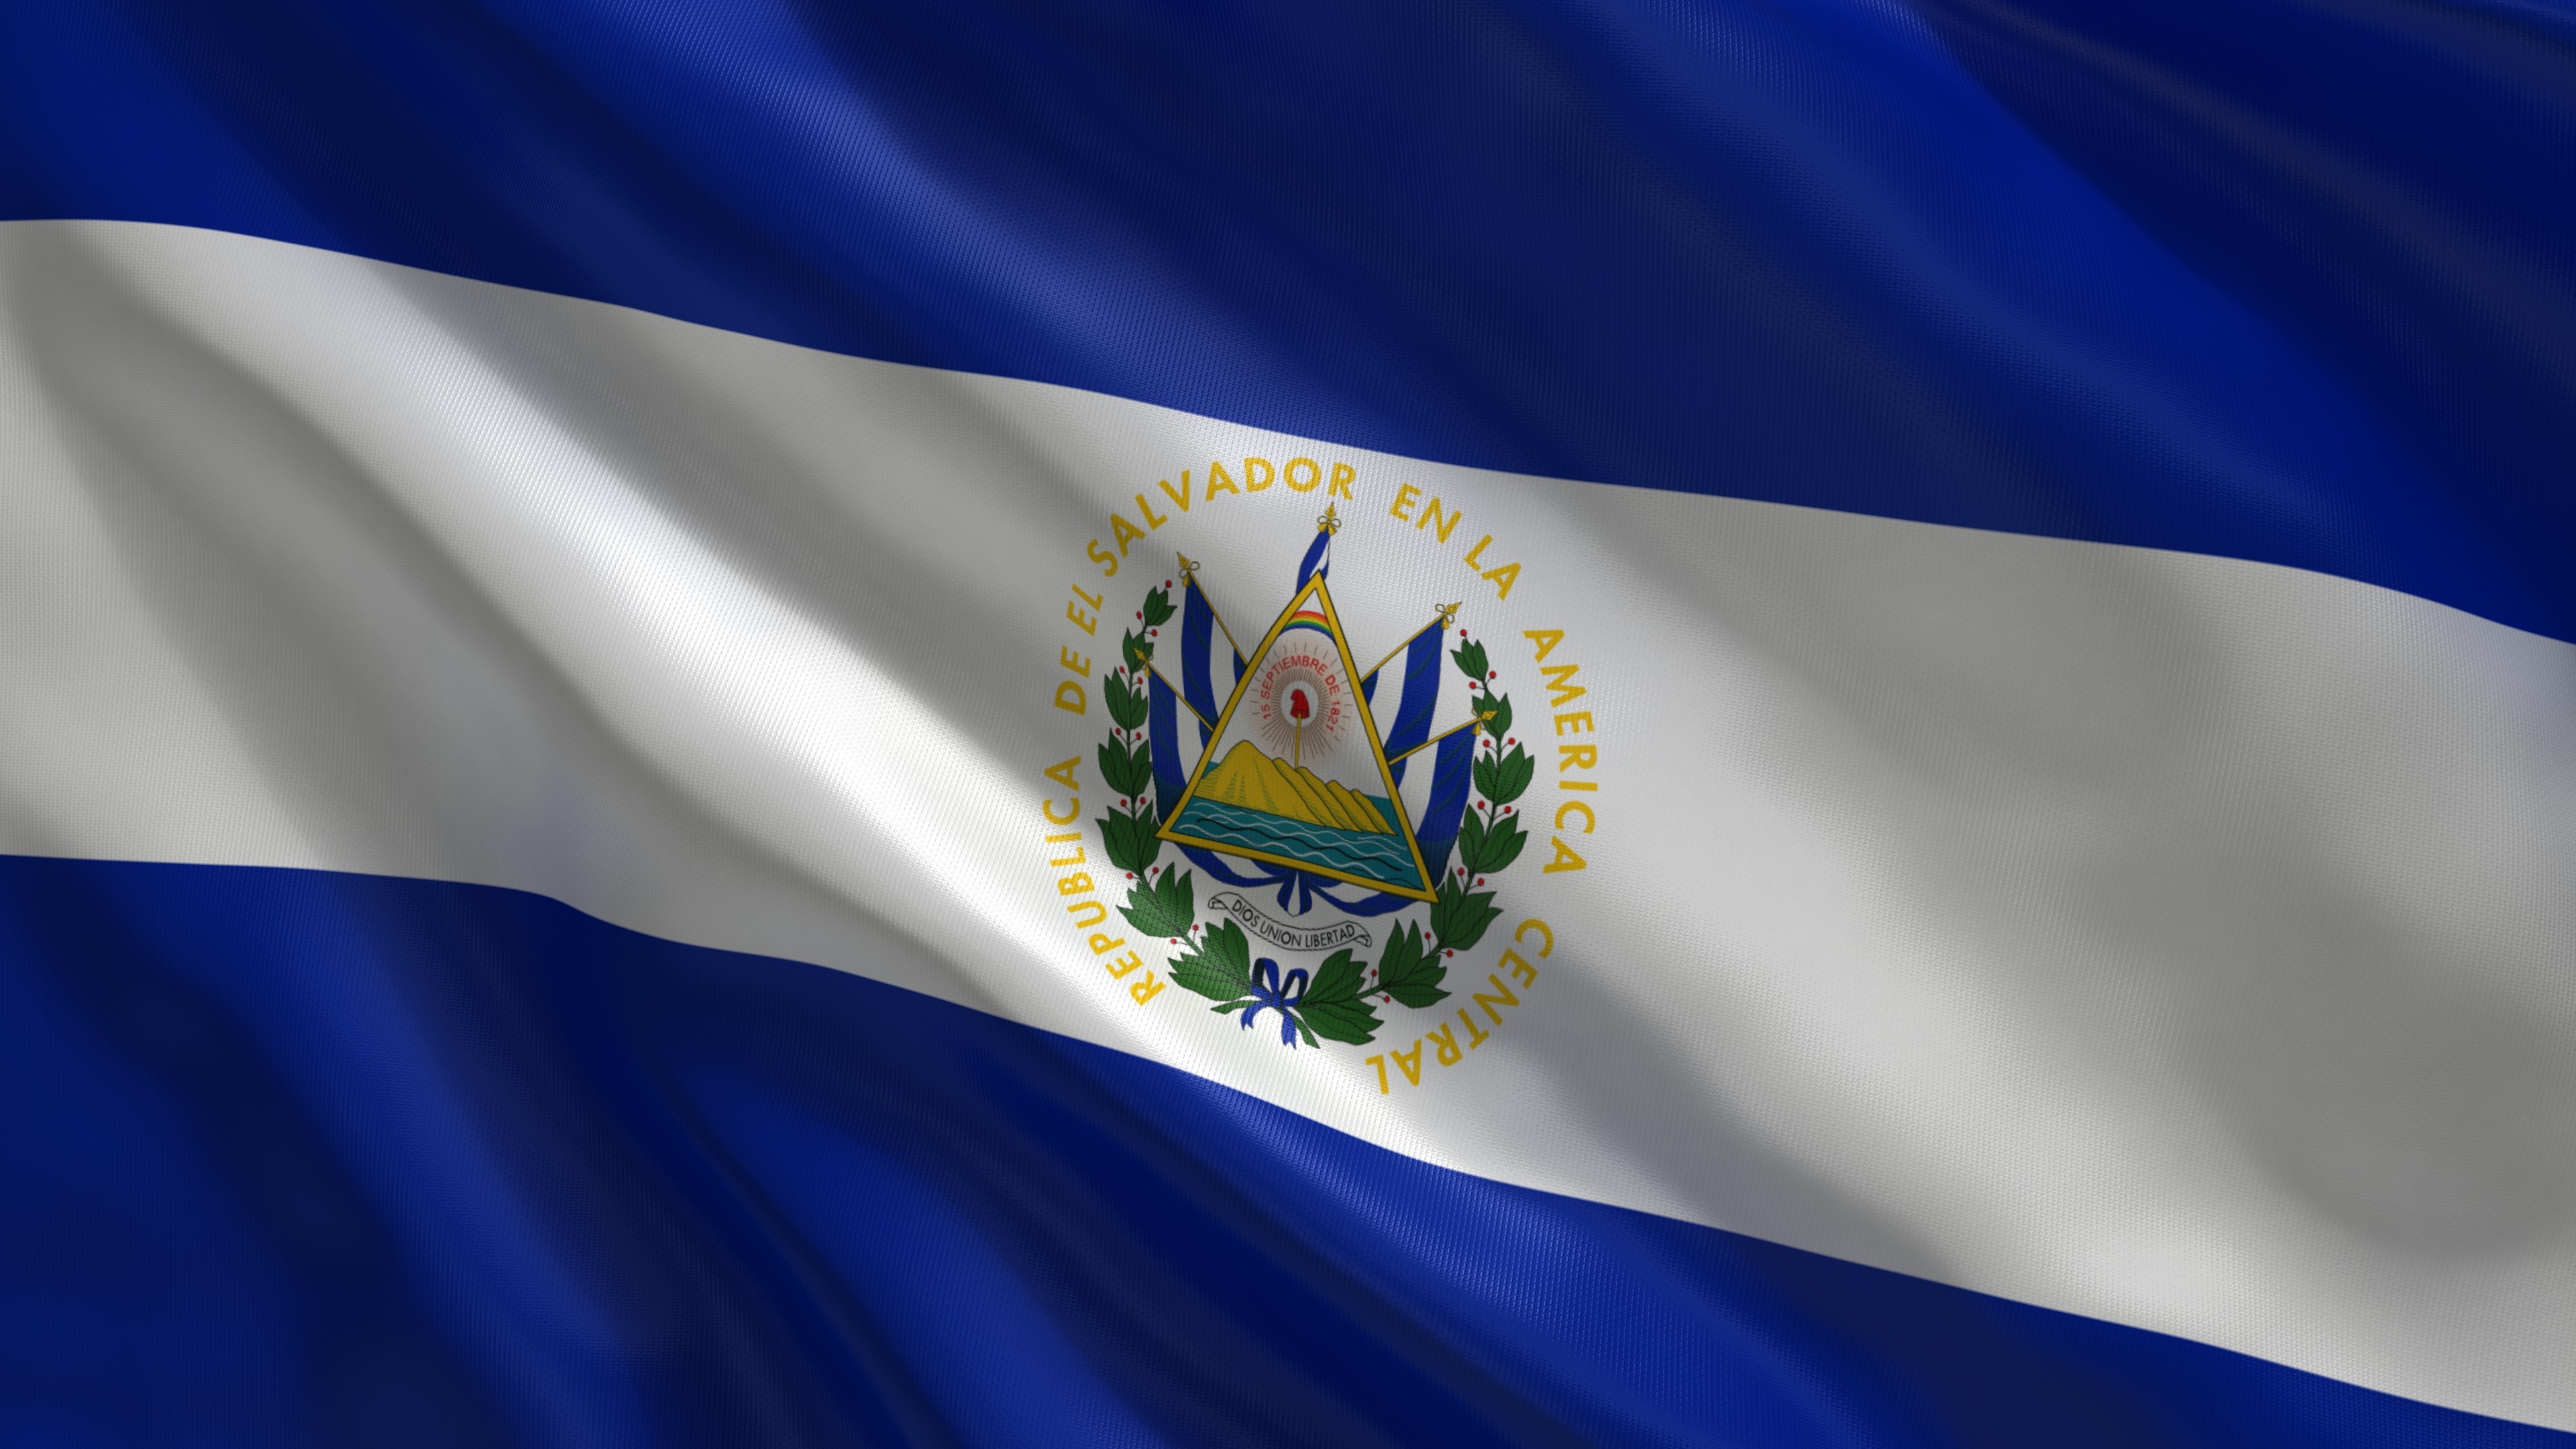 3840x2160 #6123745 Bandera De El Salvador Wallpaper for PC - HD Wallpapers